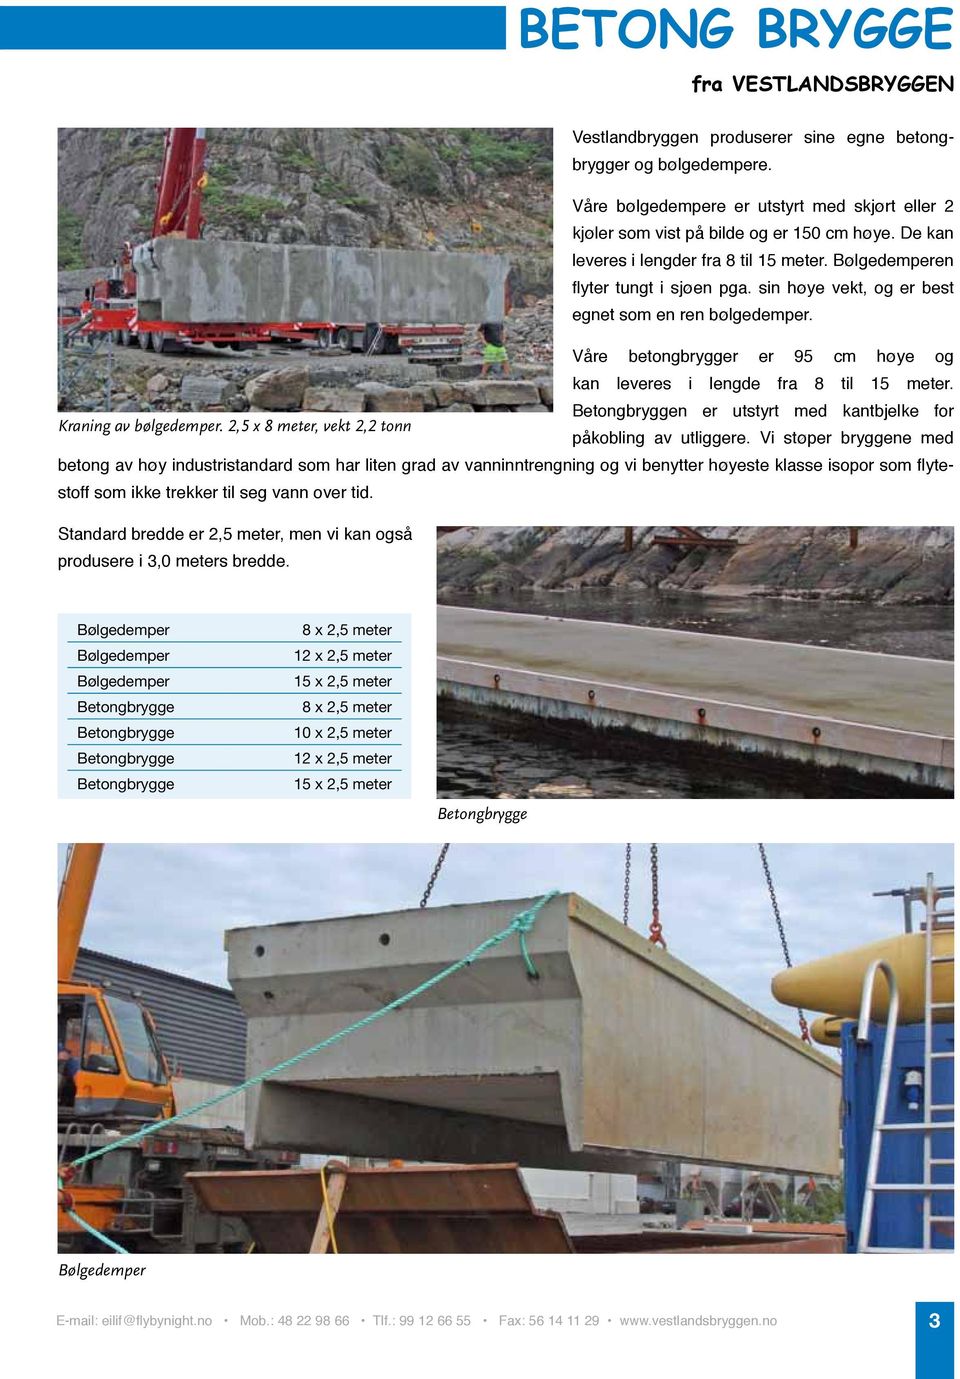 Våre betongbrygger er 95 cm høye og kan leveres i lengde fra 8 til 15 meter. Betongbryggen er utstyrt med kantbjelke for Kraning av bølgedemper. 2,5 x 8 meter, vekt 2,2 tonn påkobling av utliggere.